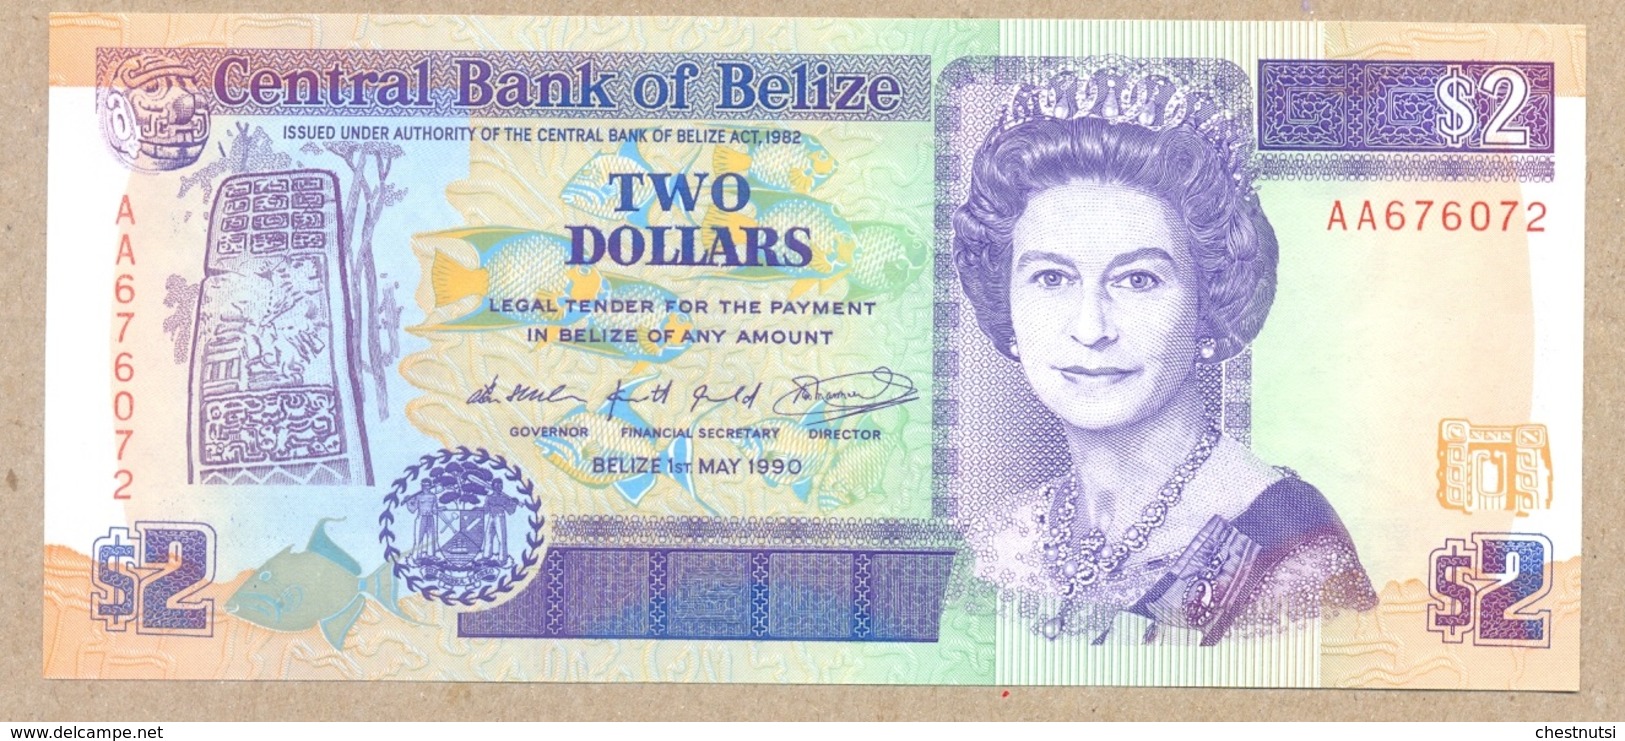 Belize 2 Dollars 1990  P52  UNC - Belize